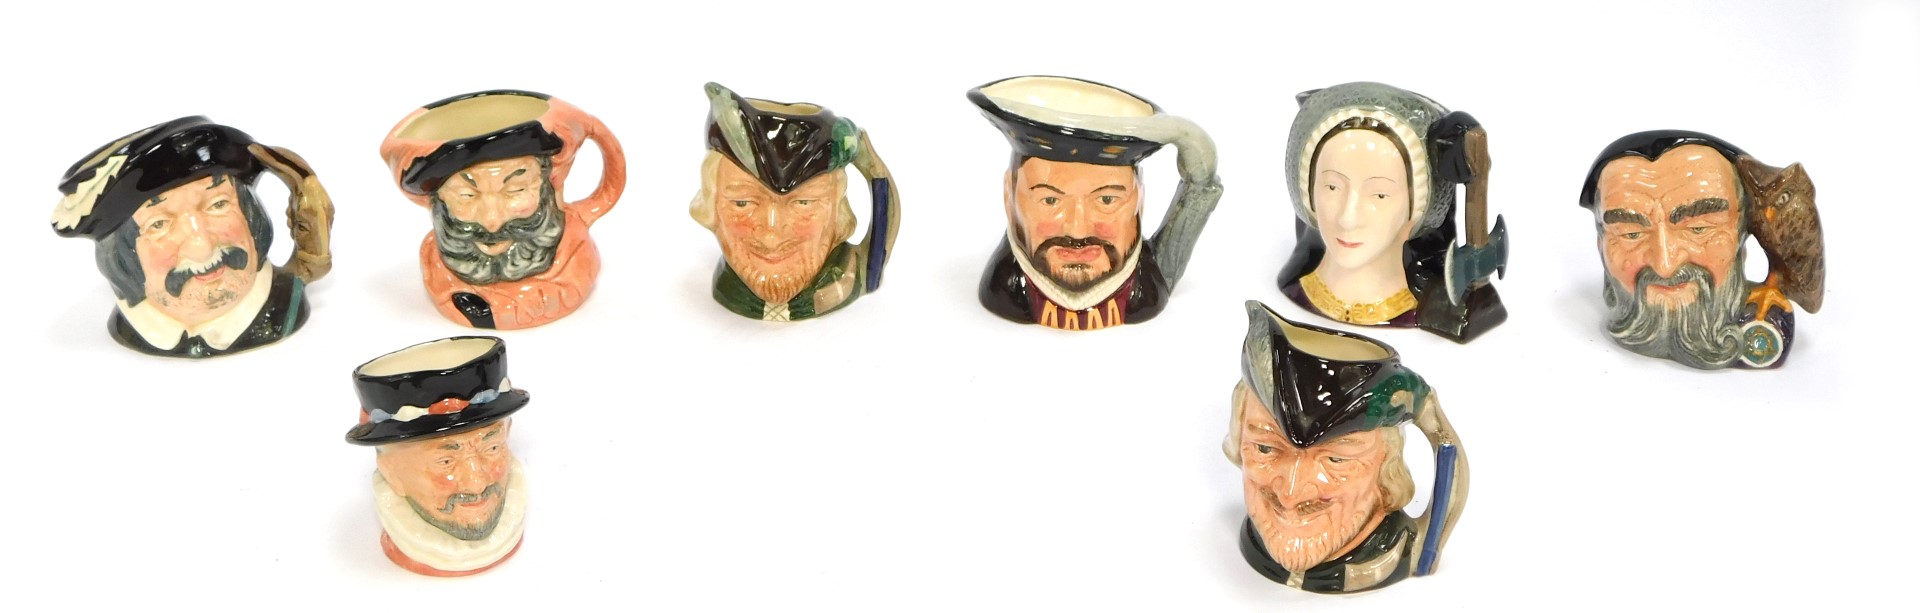 Eight Royal Doulton small character jugs, comprising Falstaff, Sancho Pancha, Robin Hood (x2), Beefe